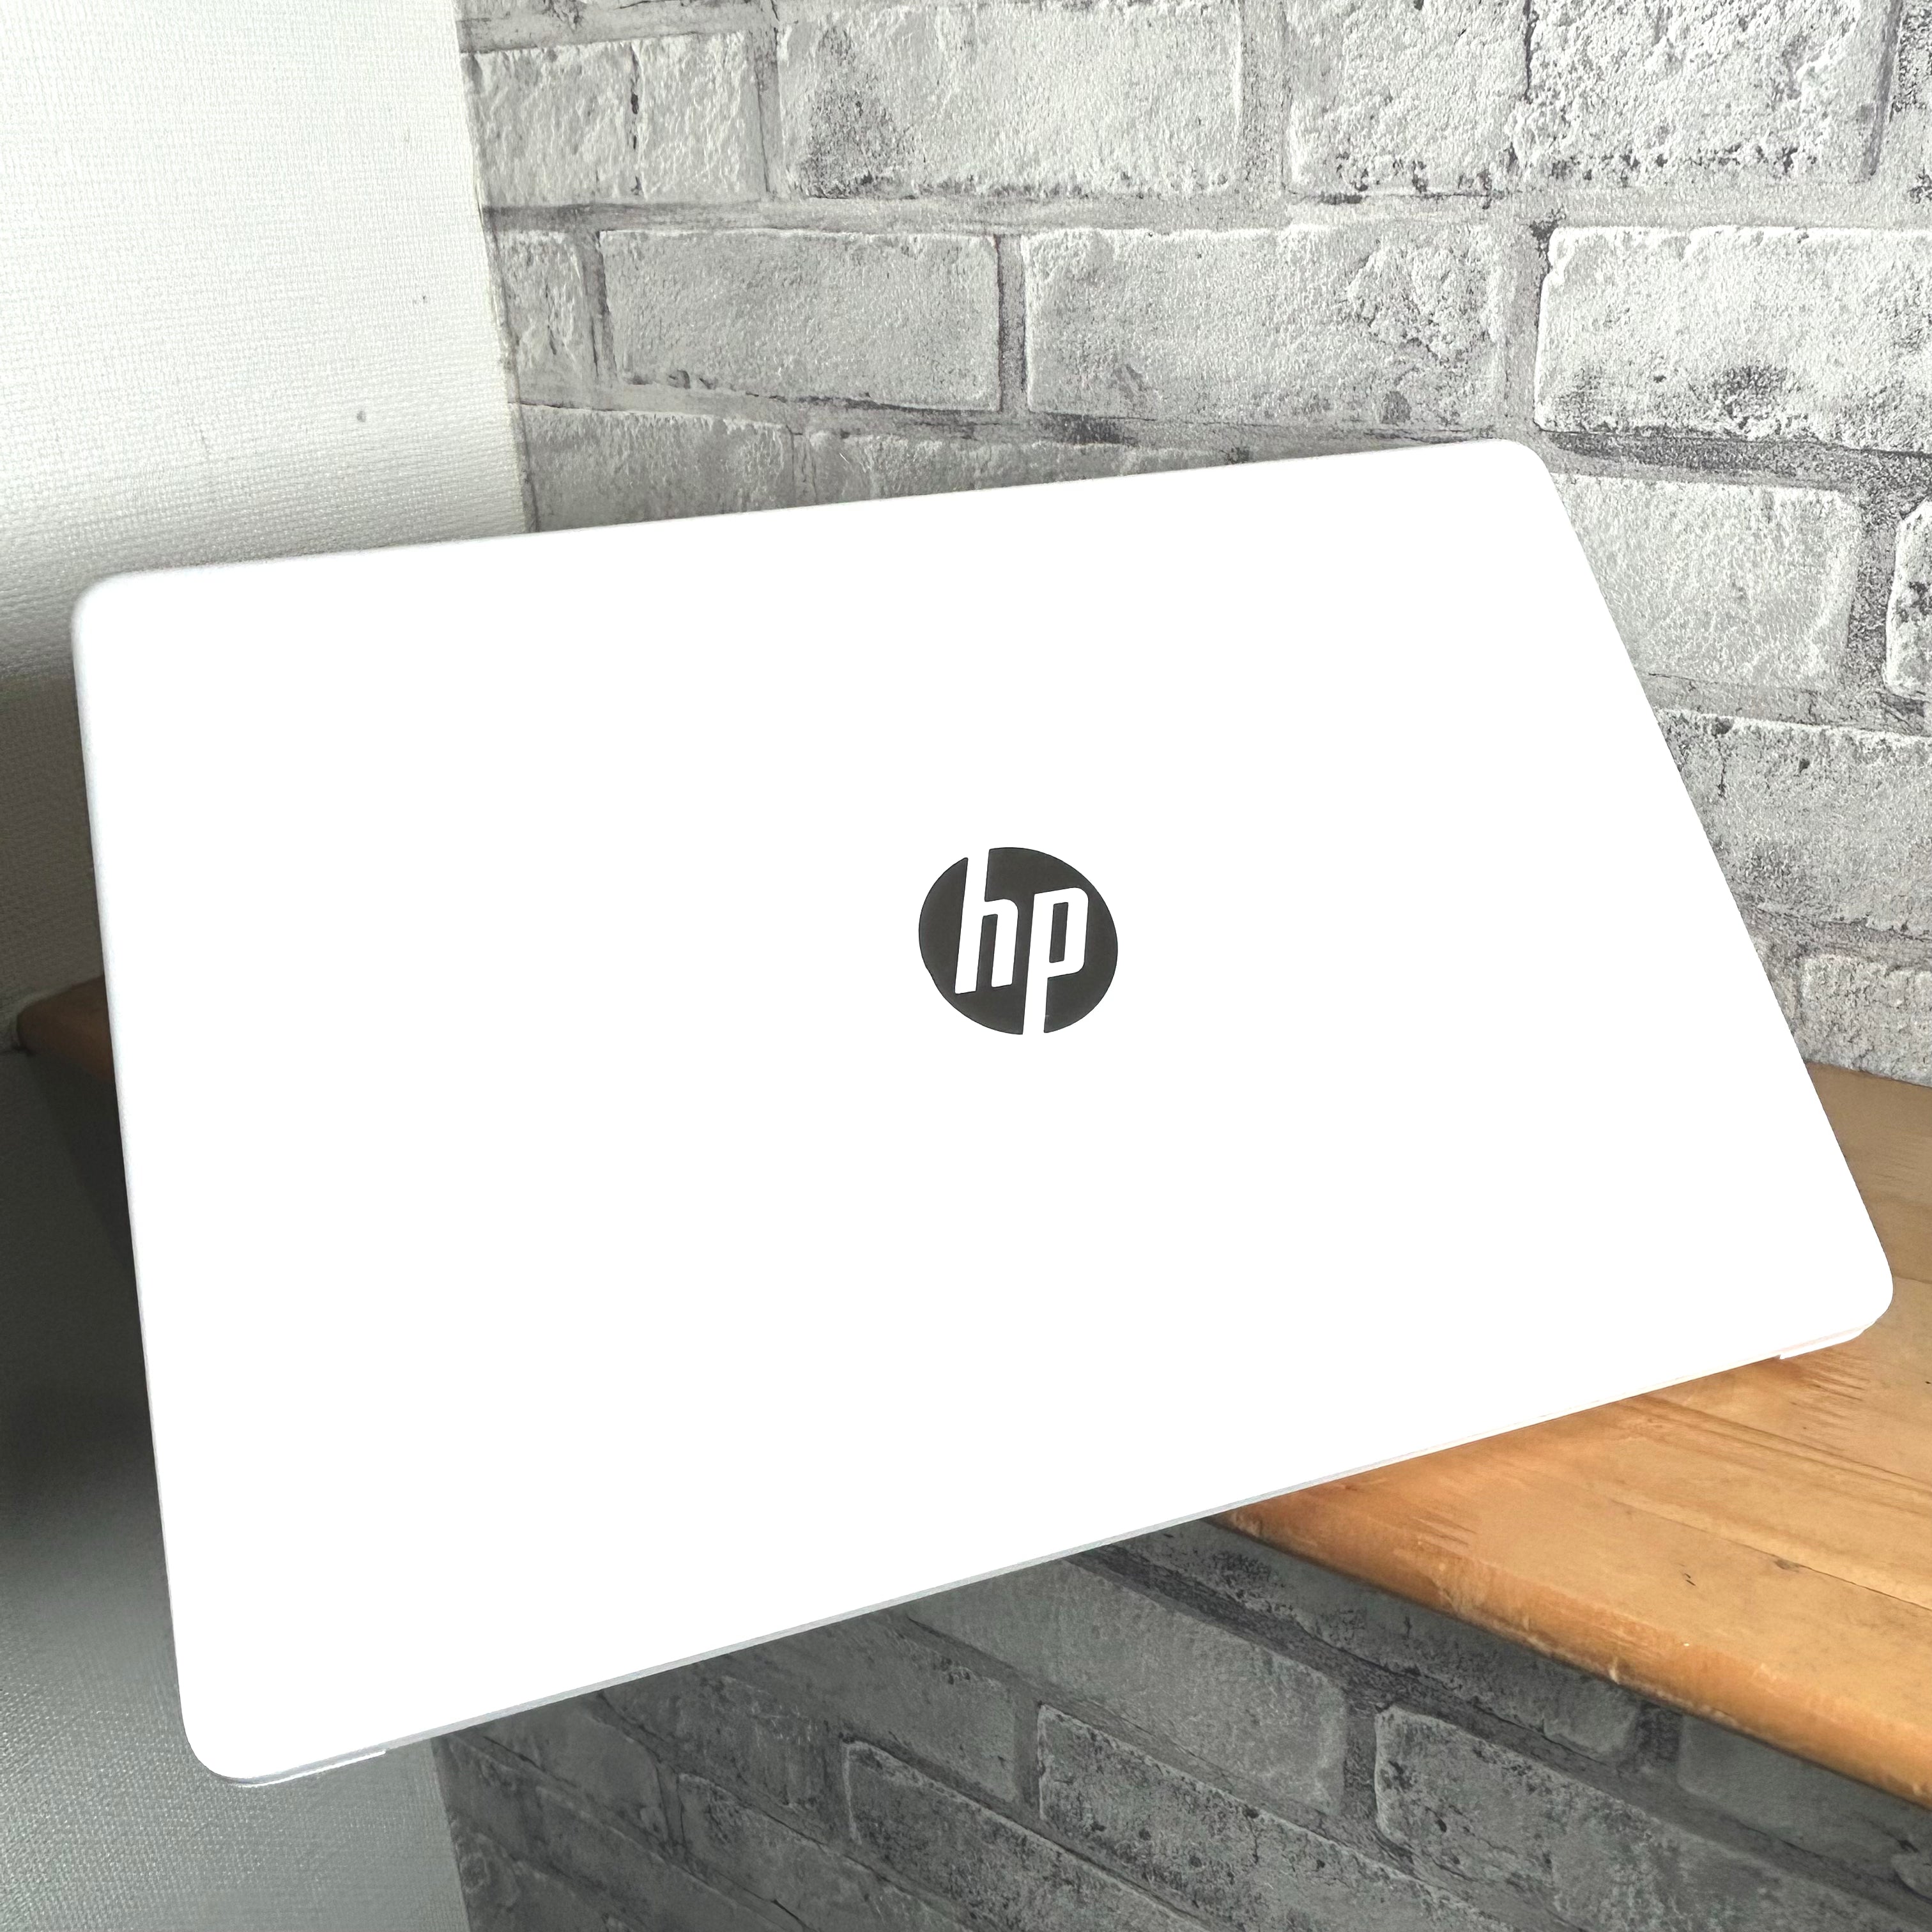 Aランク】【1台限定特価品】【2020年モデル】hp Laptop 15s-fq1066TU 